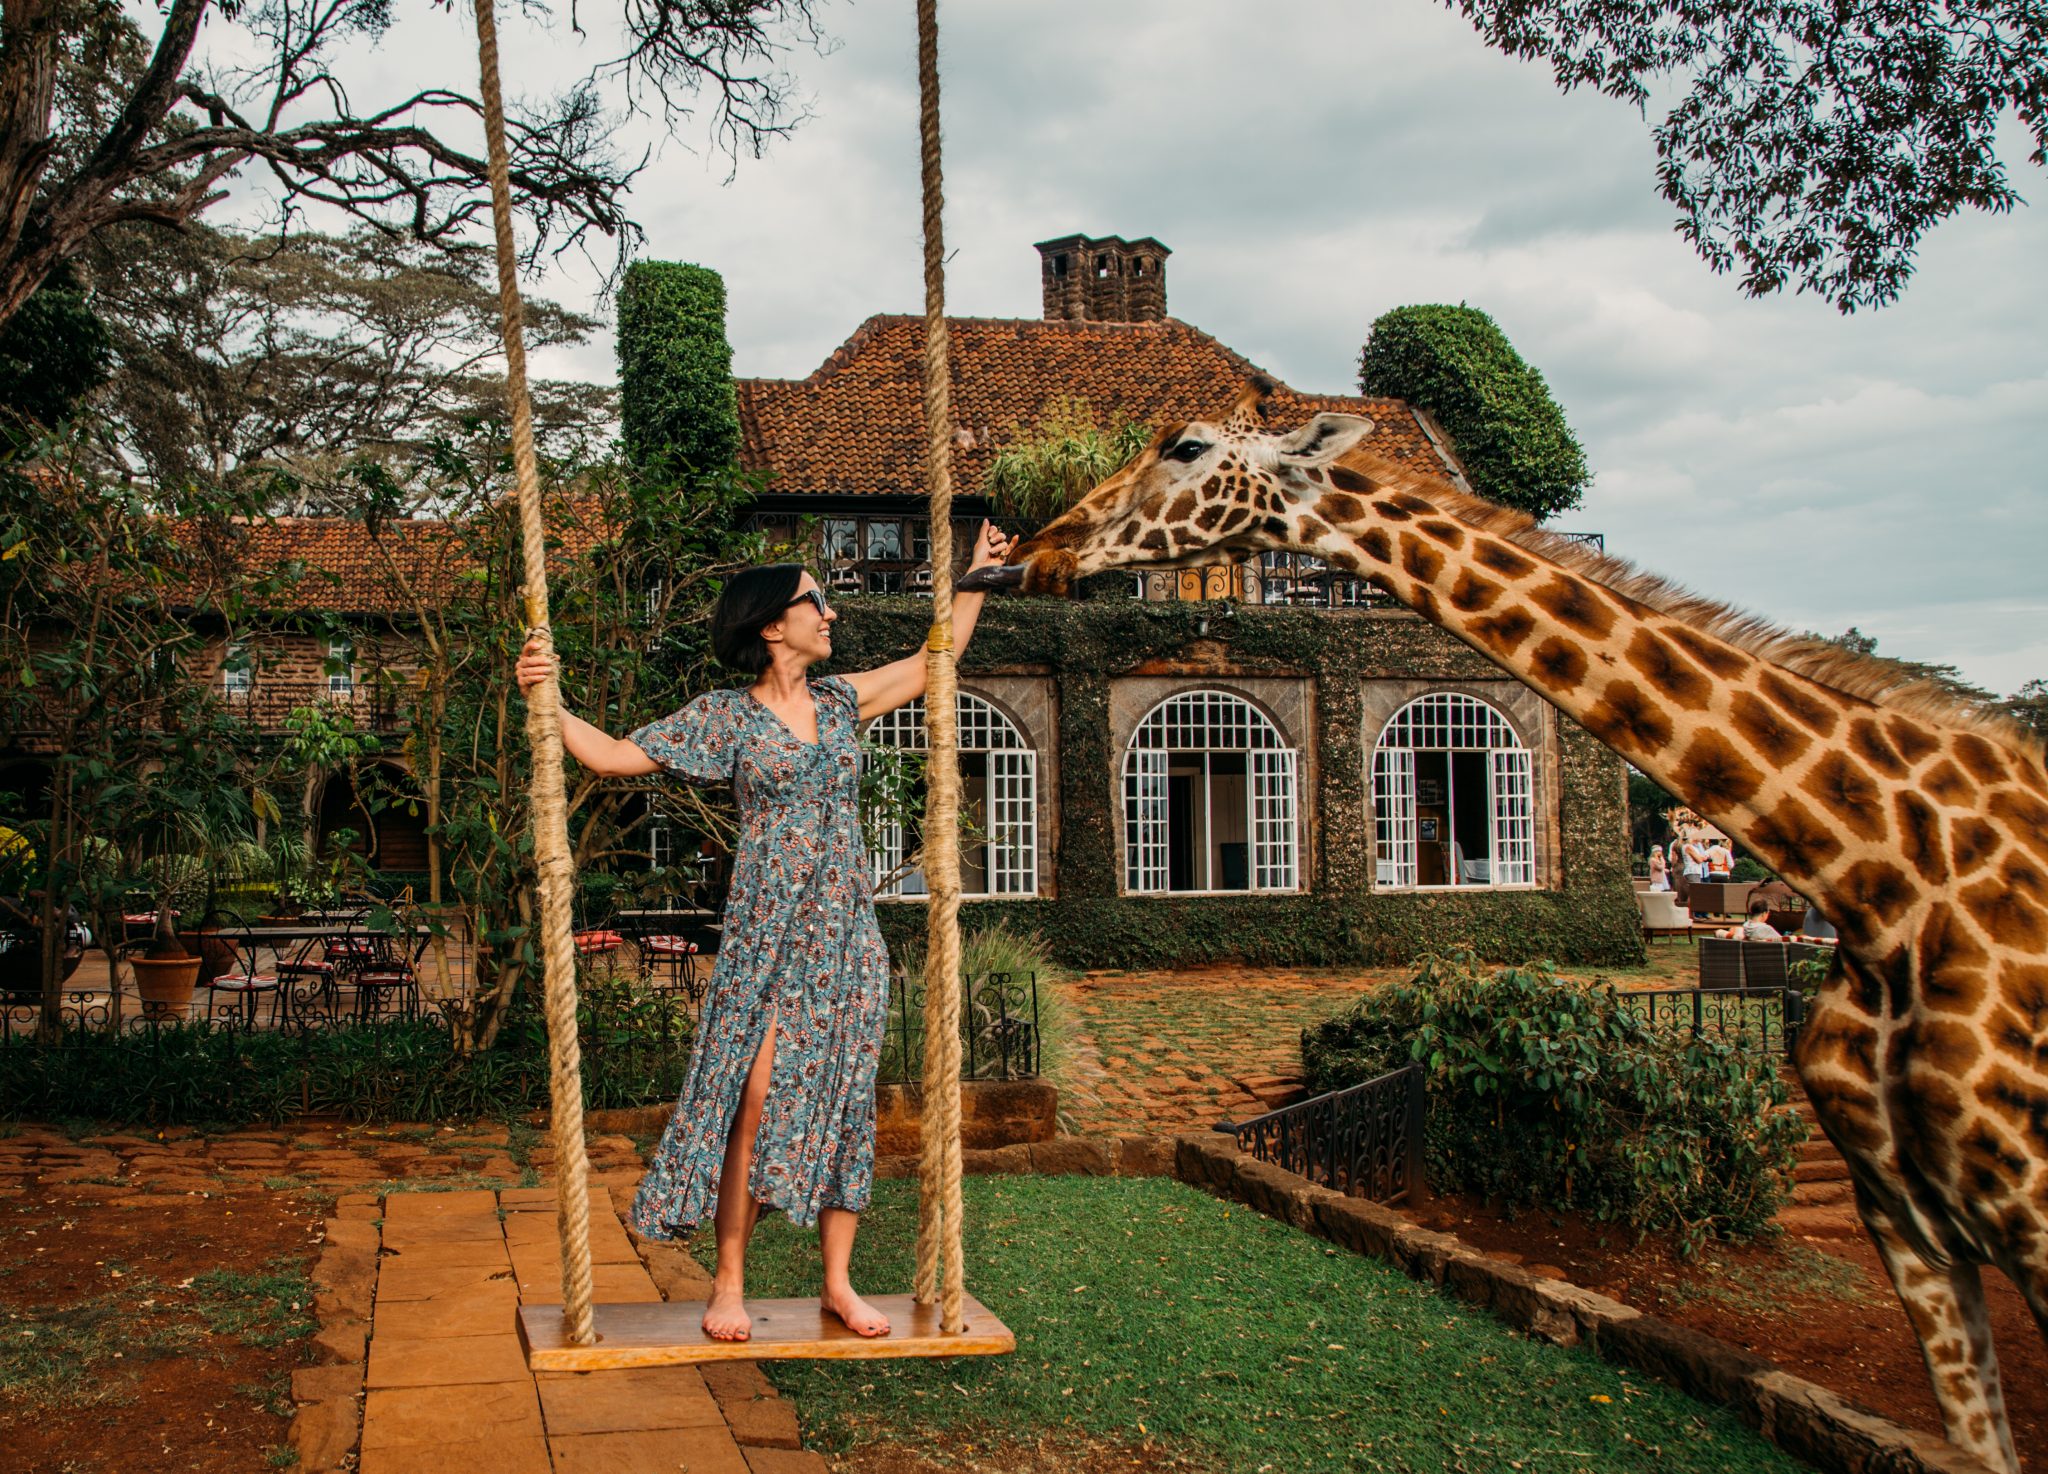 A woman feeding a giraffe from a swing in front of Giraffe Manor.